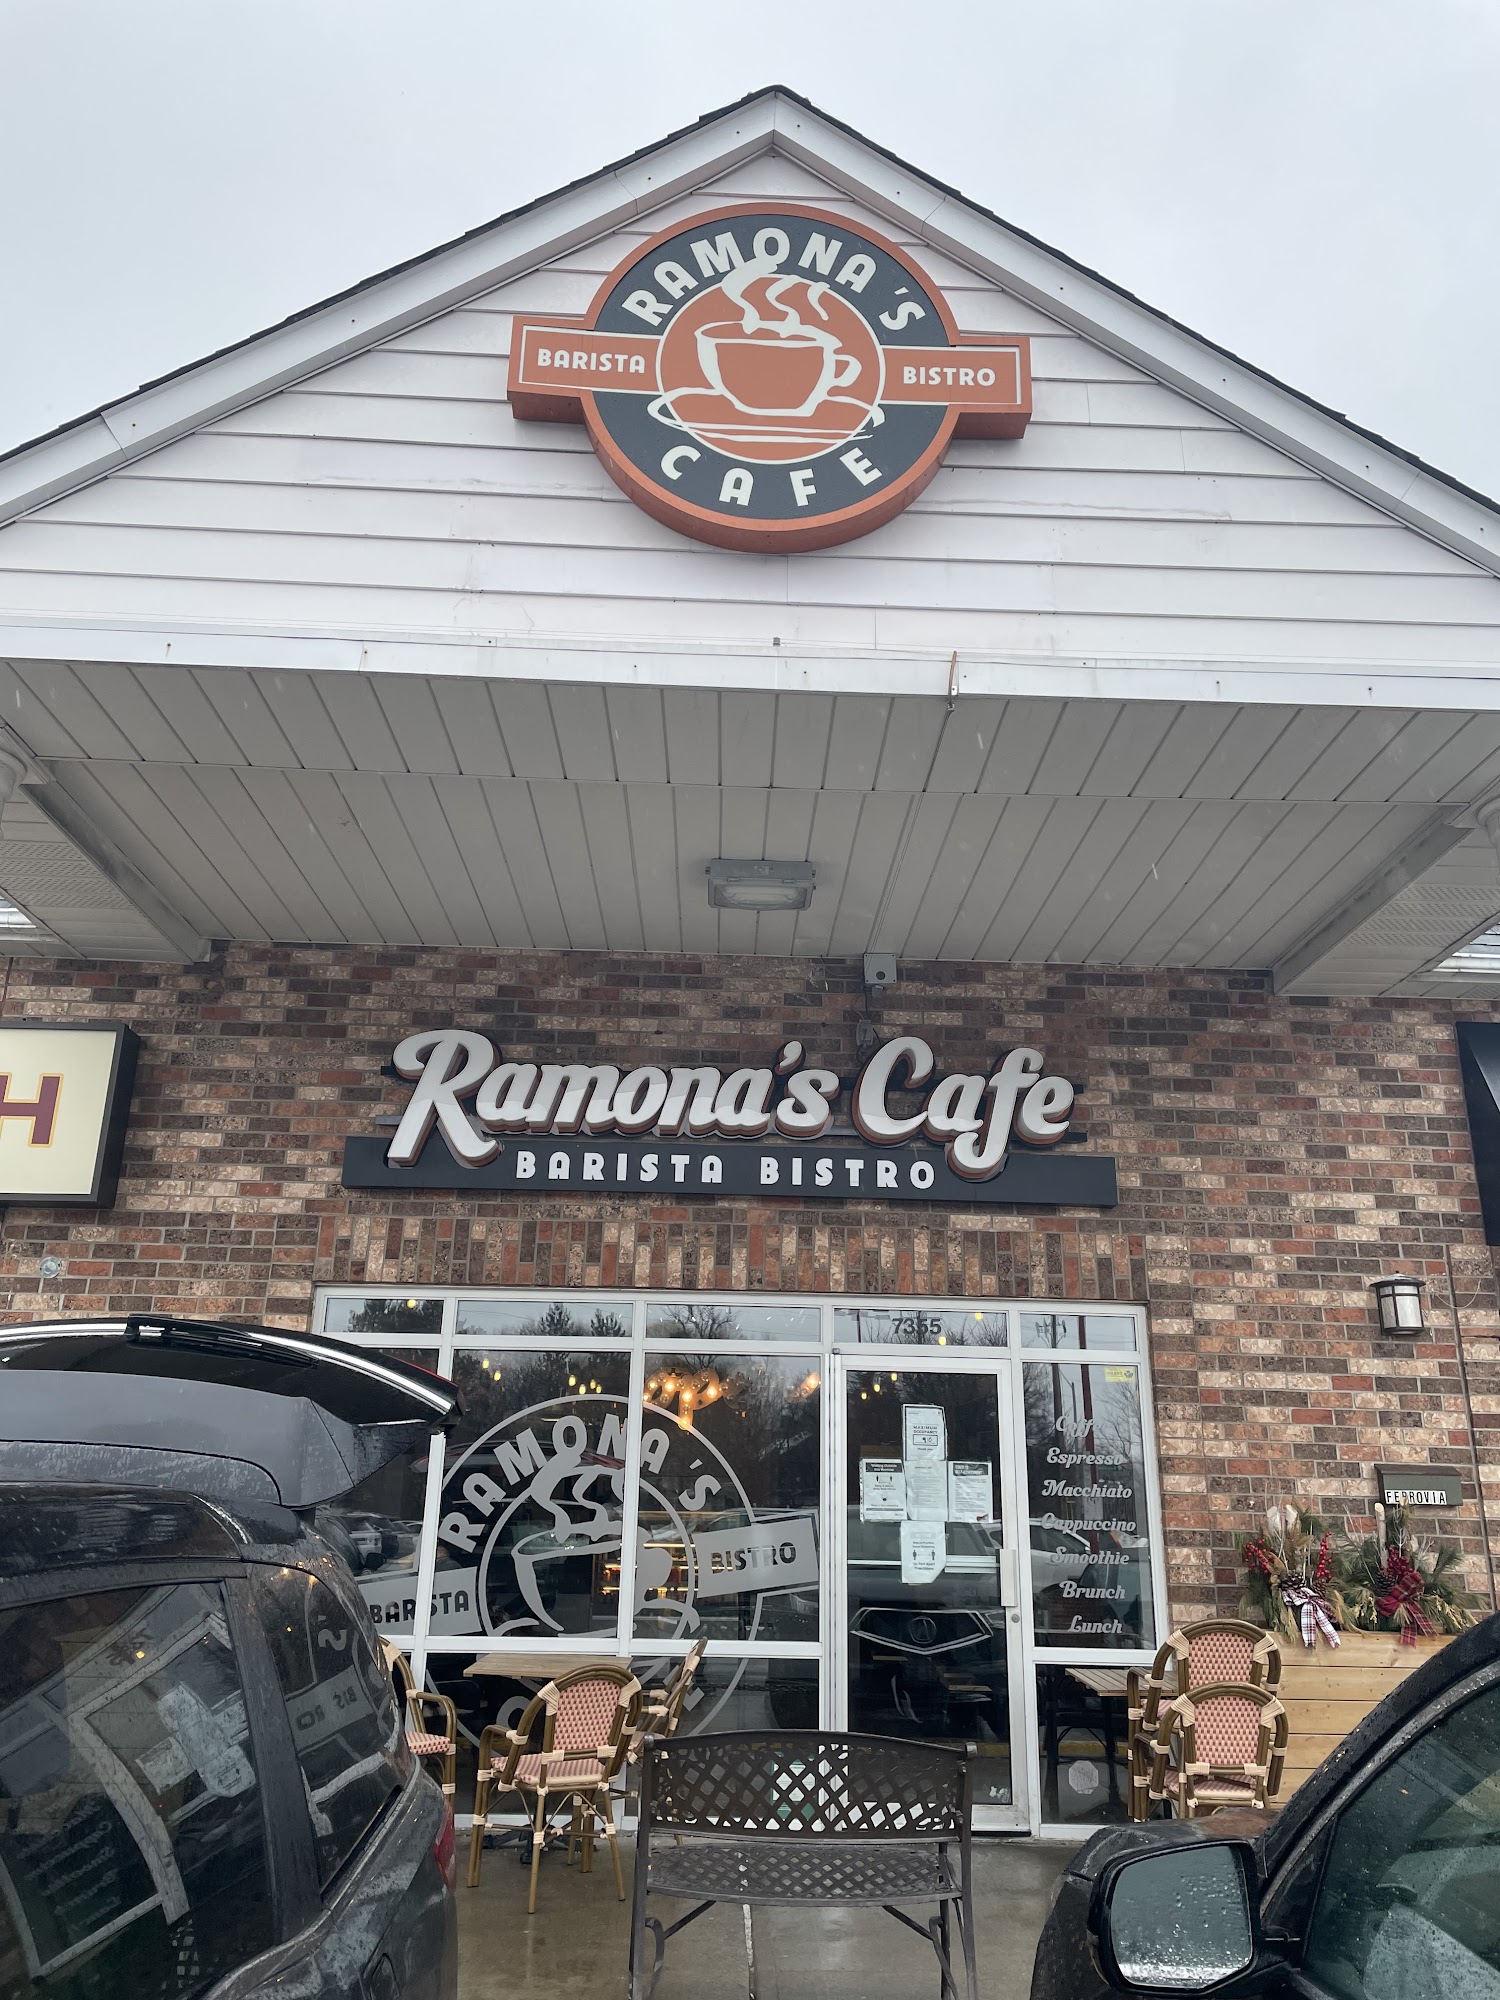 Ramonas Cafe